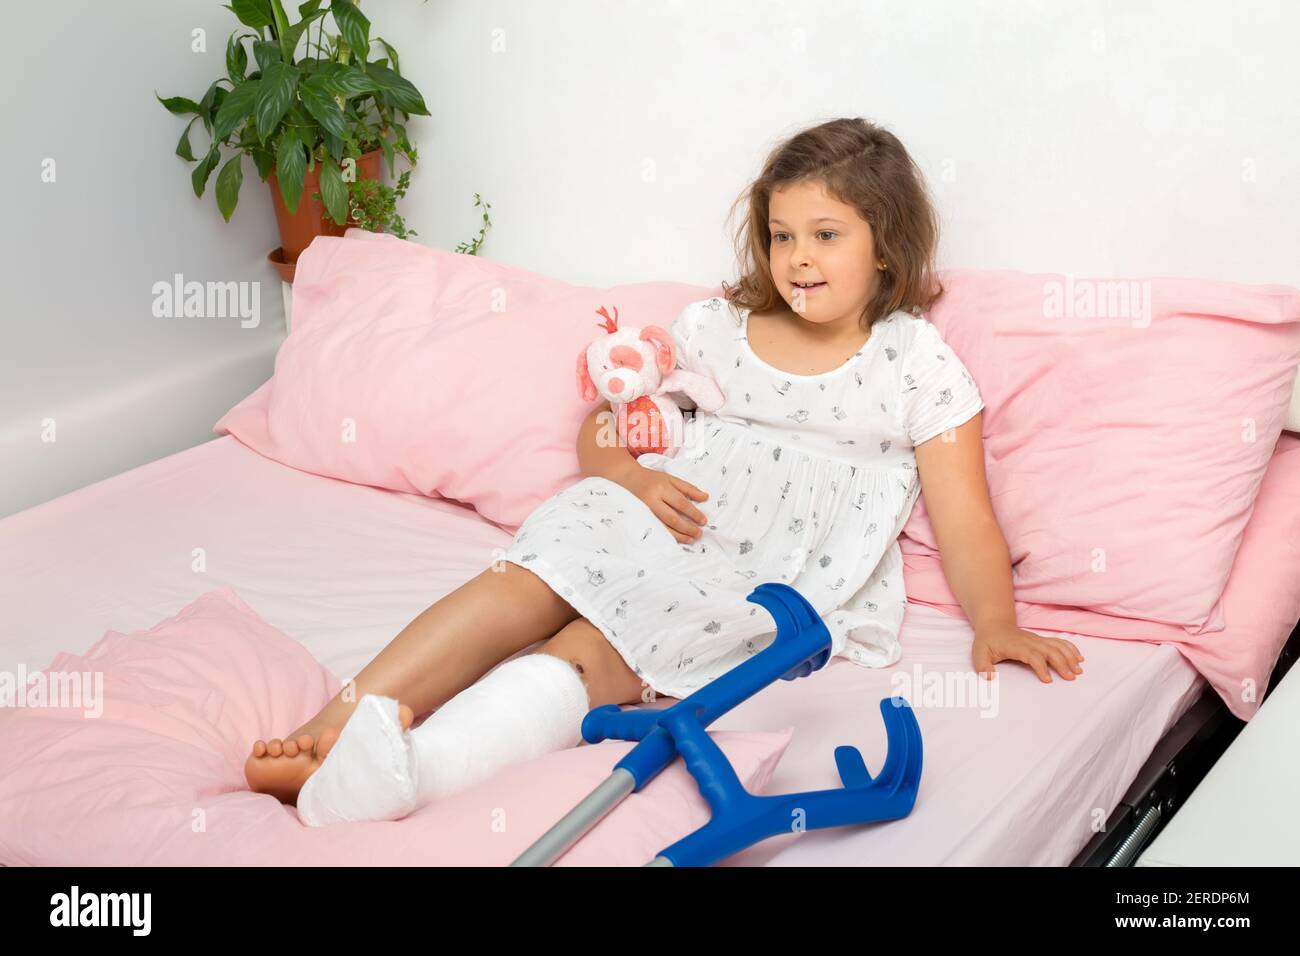 Une adolescente détendue se trouve sur le lit après avoir reçu un plâtre moulé sur sa jambe dans une salle d'urgence orthopédique. L'enfant a une jambe cassée, cassée Banque D'Images